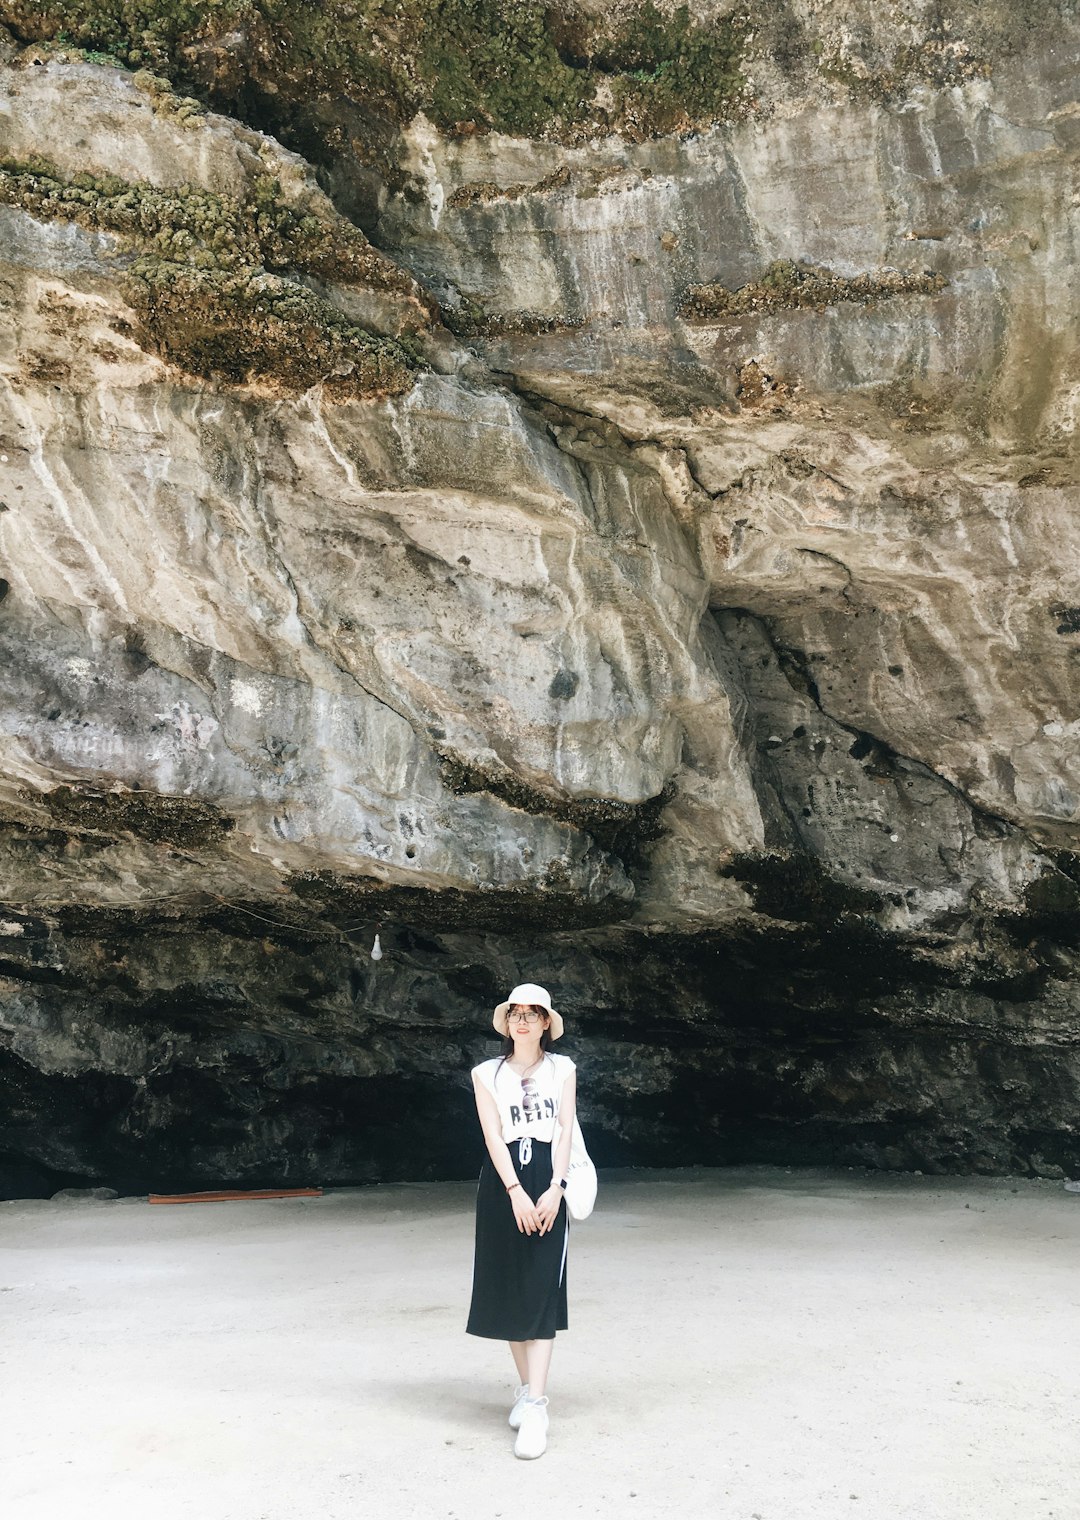 Cave photo spot Lý Sơn Vietnam